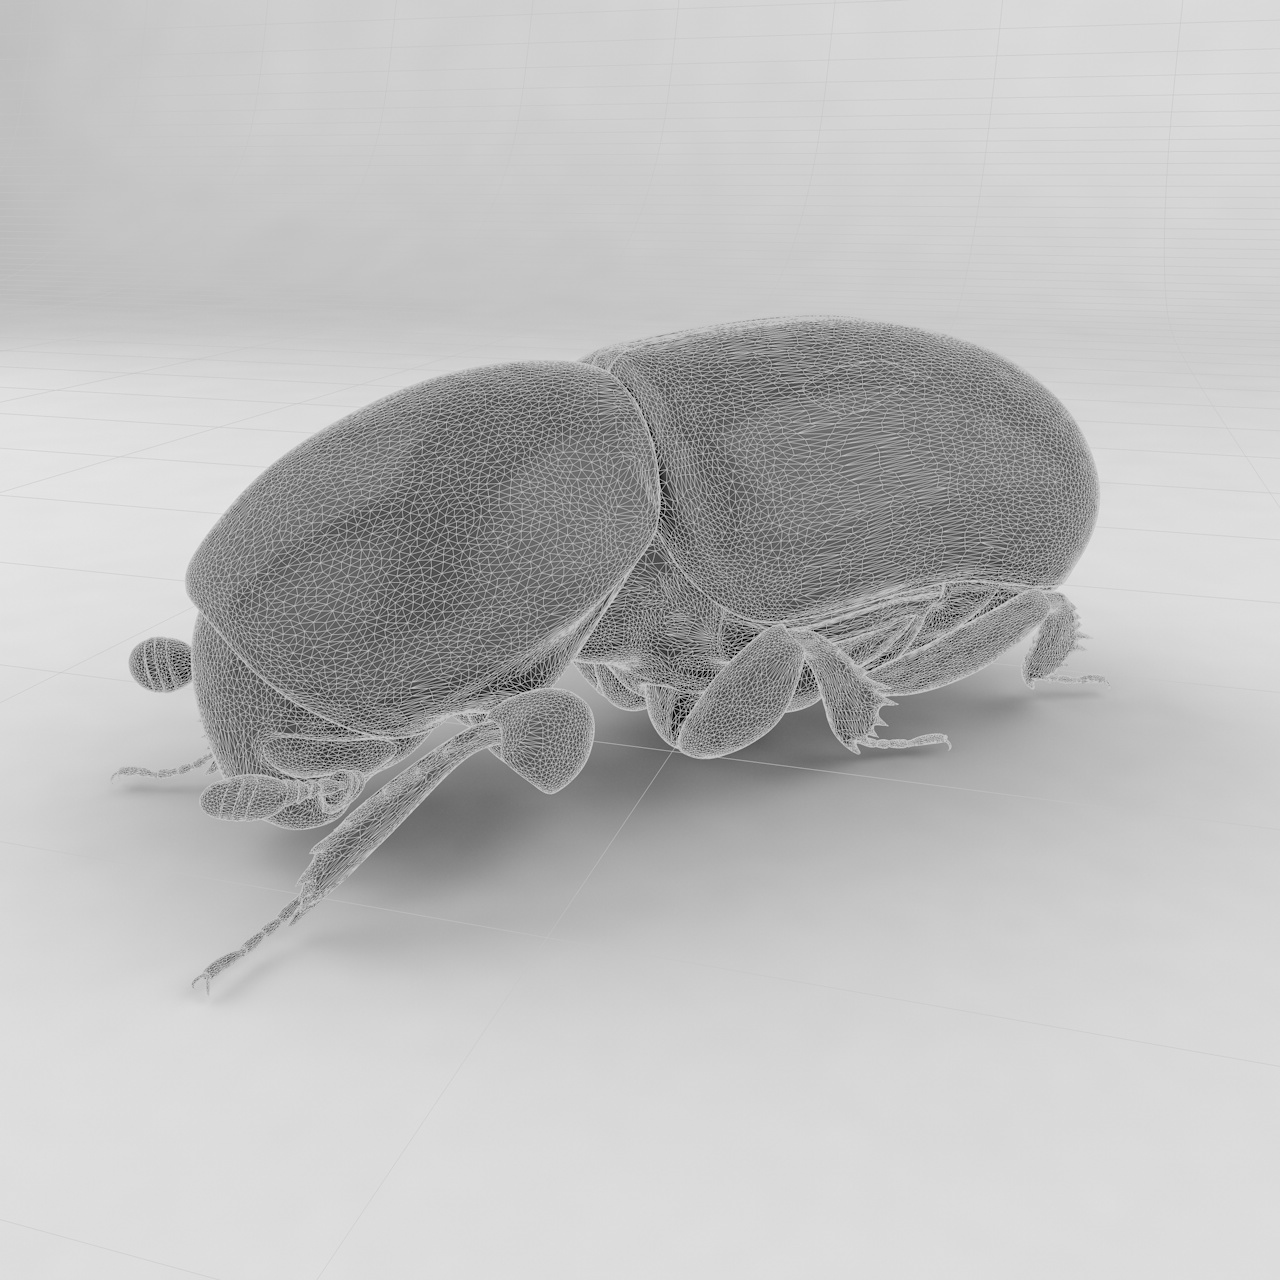 Havlama böceği böcek böcekleri 3d modeli